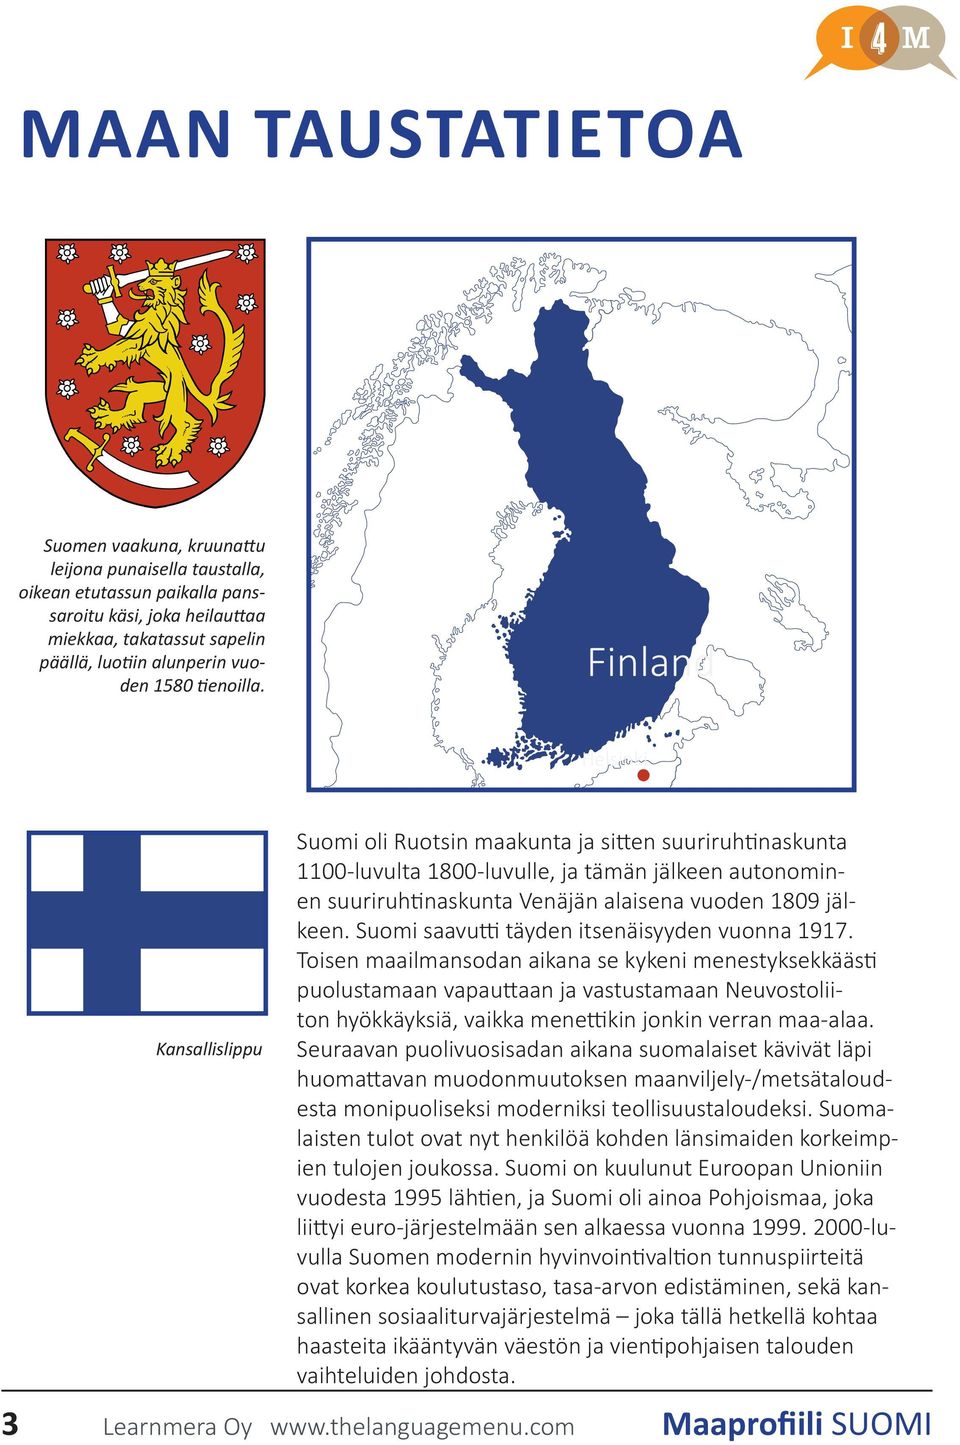 Finland Helsinki Kansallislippu Suomi oli Ruotsin maakunta ja sitten suuriruhtinaskunta 1100-luvulta 1800-luvulle, ja tämän jälkeen autonominen suuriruhtinaskunta Venäjän alaisena vuoden 1809 jälkeen.